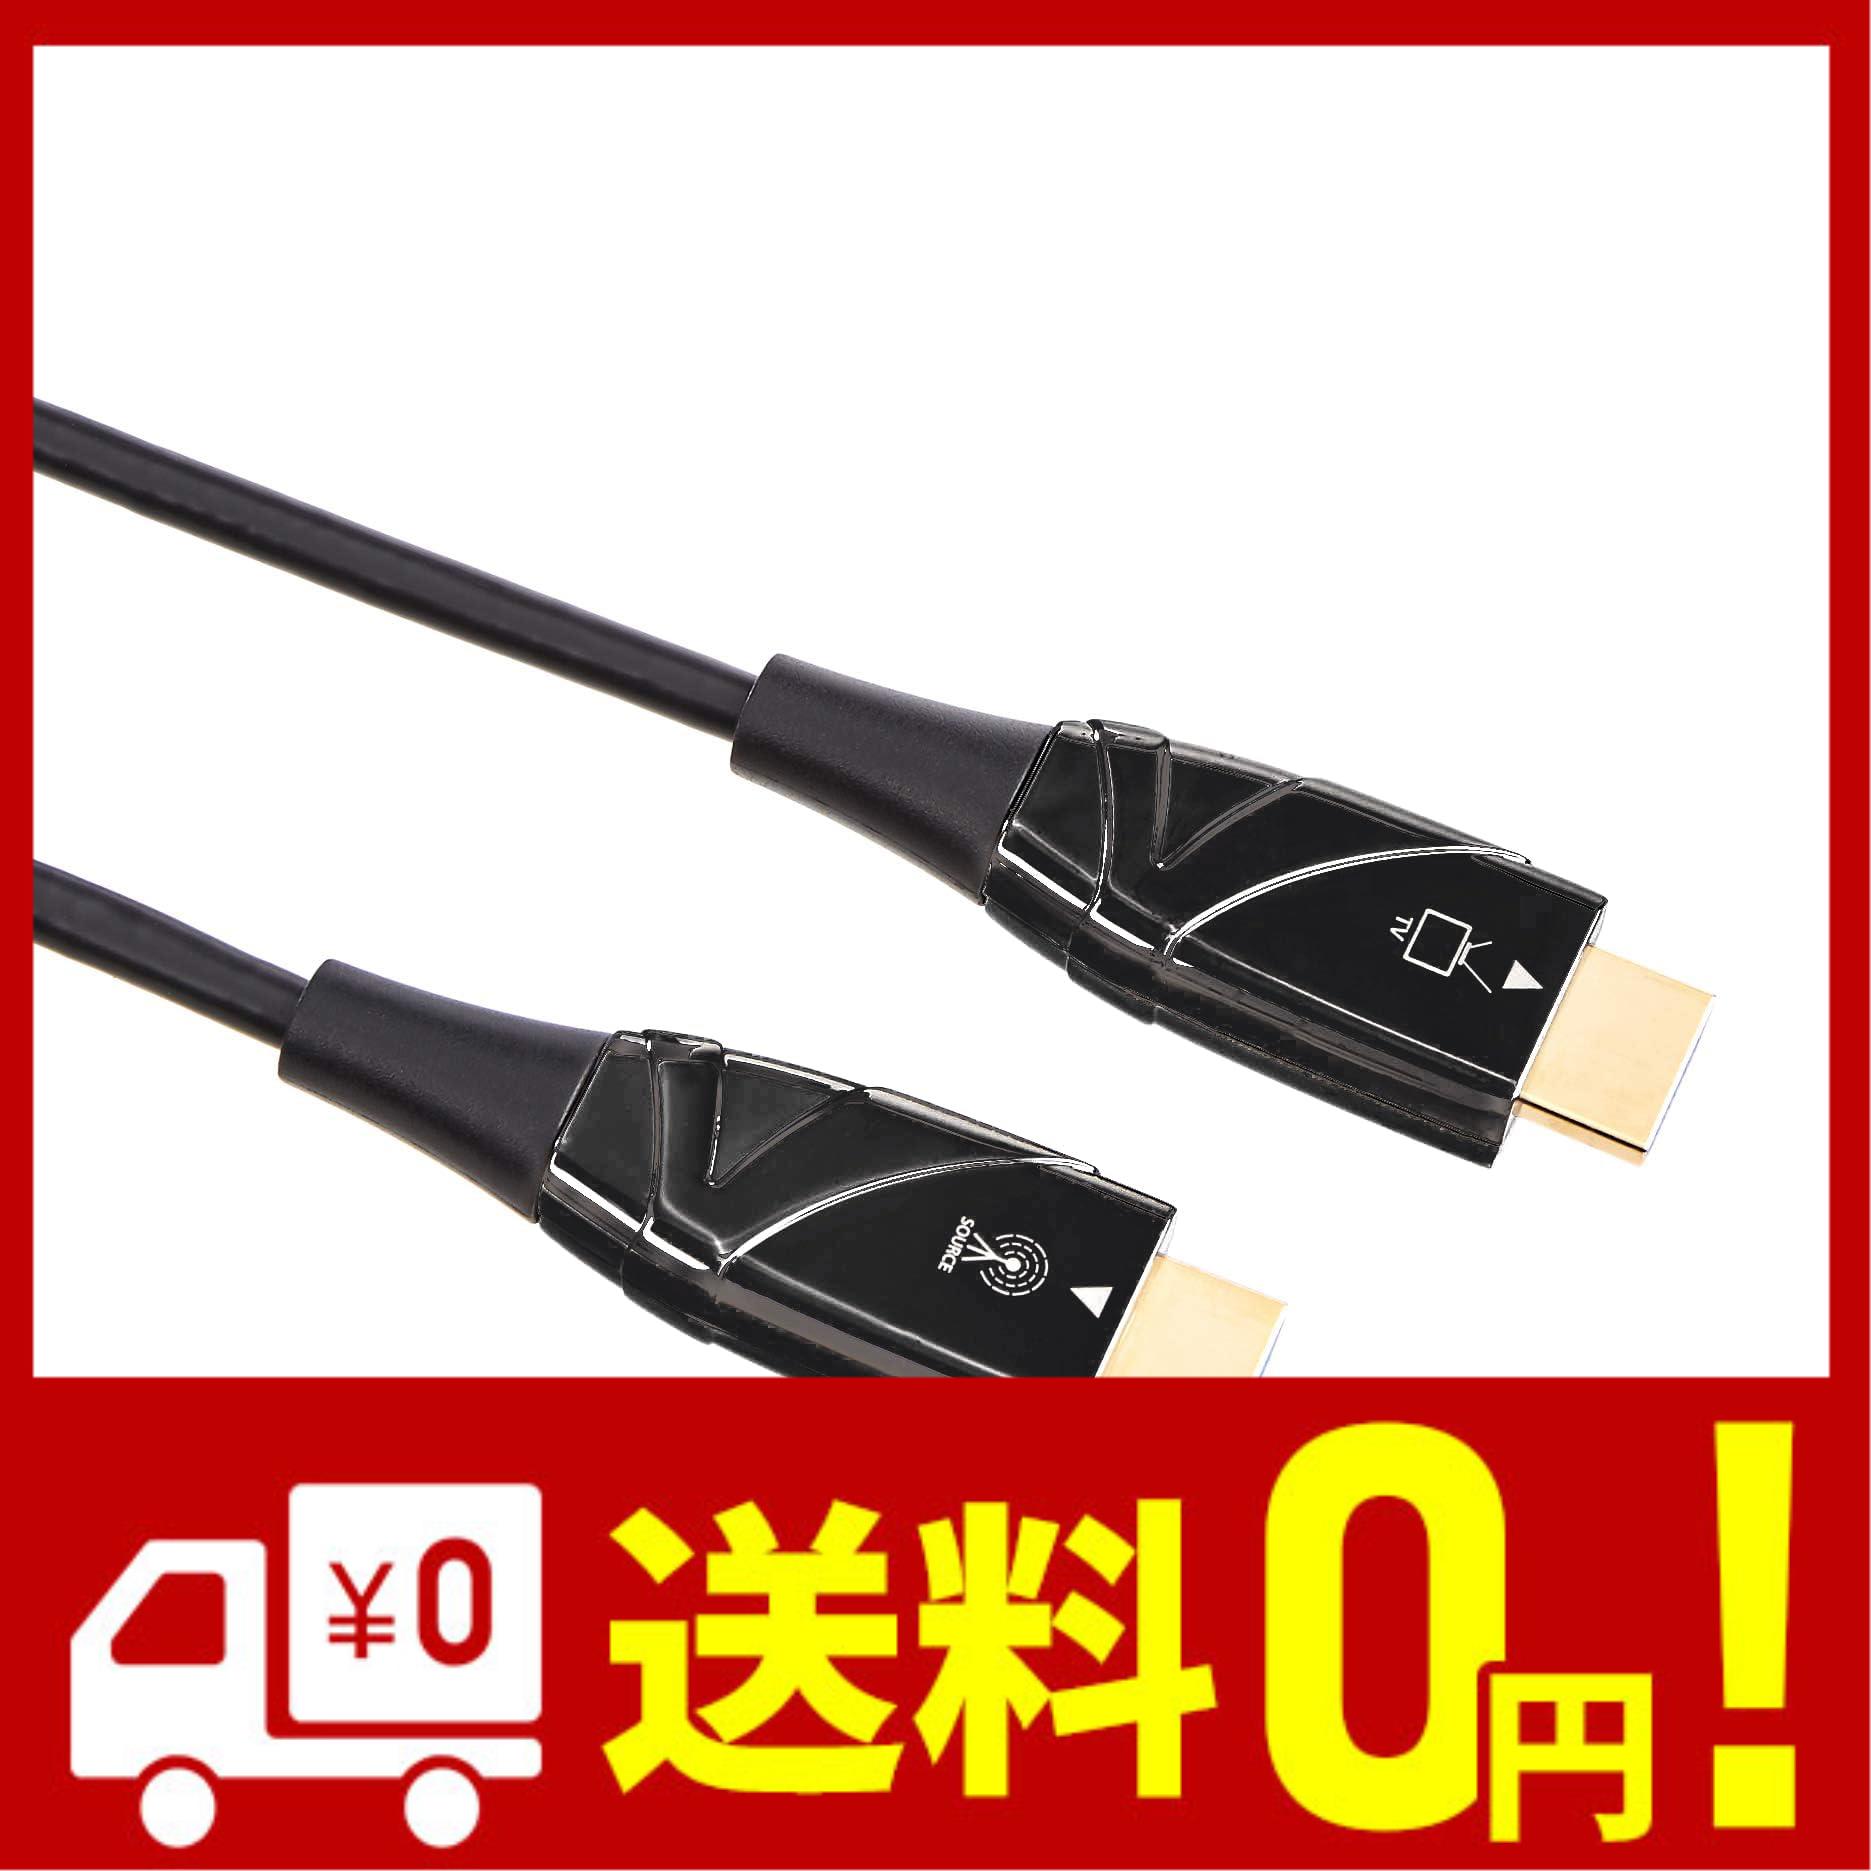 Amazonベーシック 光ファイバーケーブル HDMI ハイスピード 18 Gpbs 4K 60Hz 約15.2m